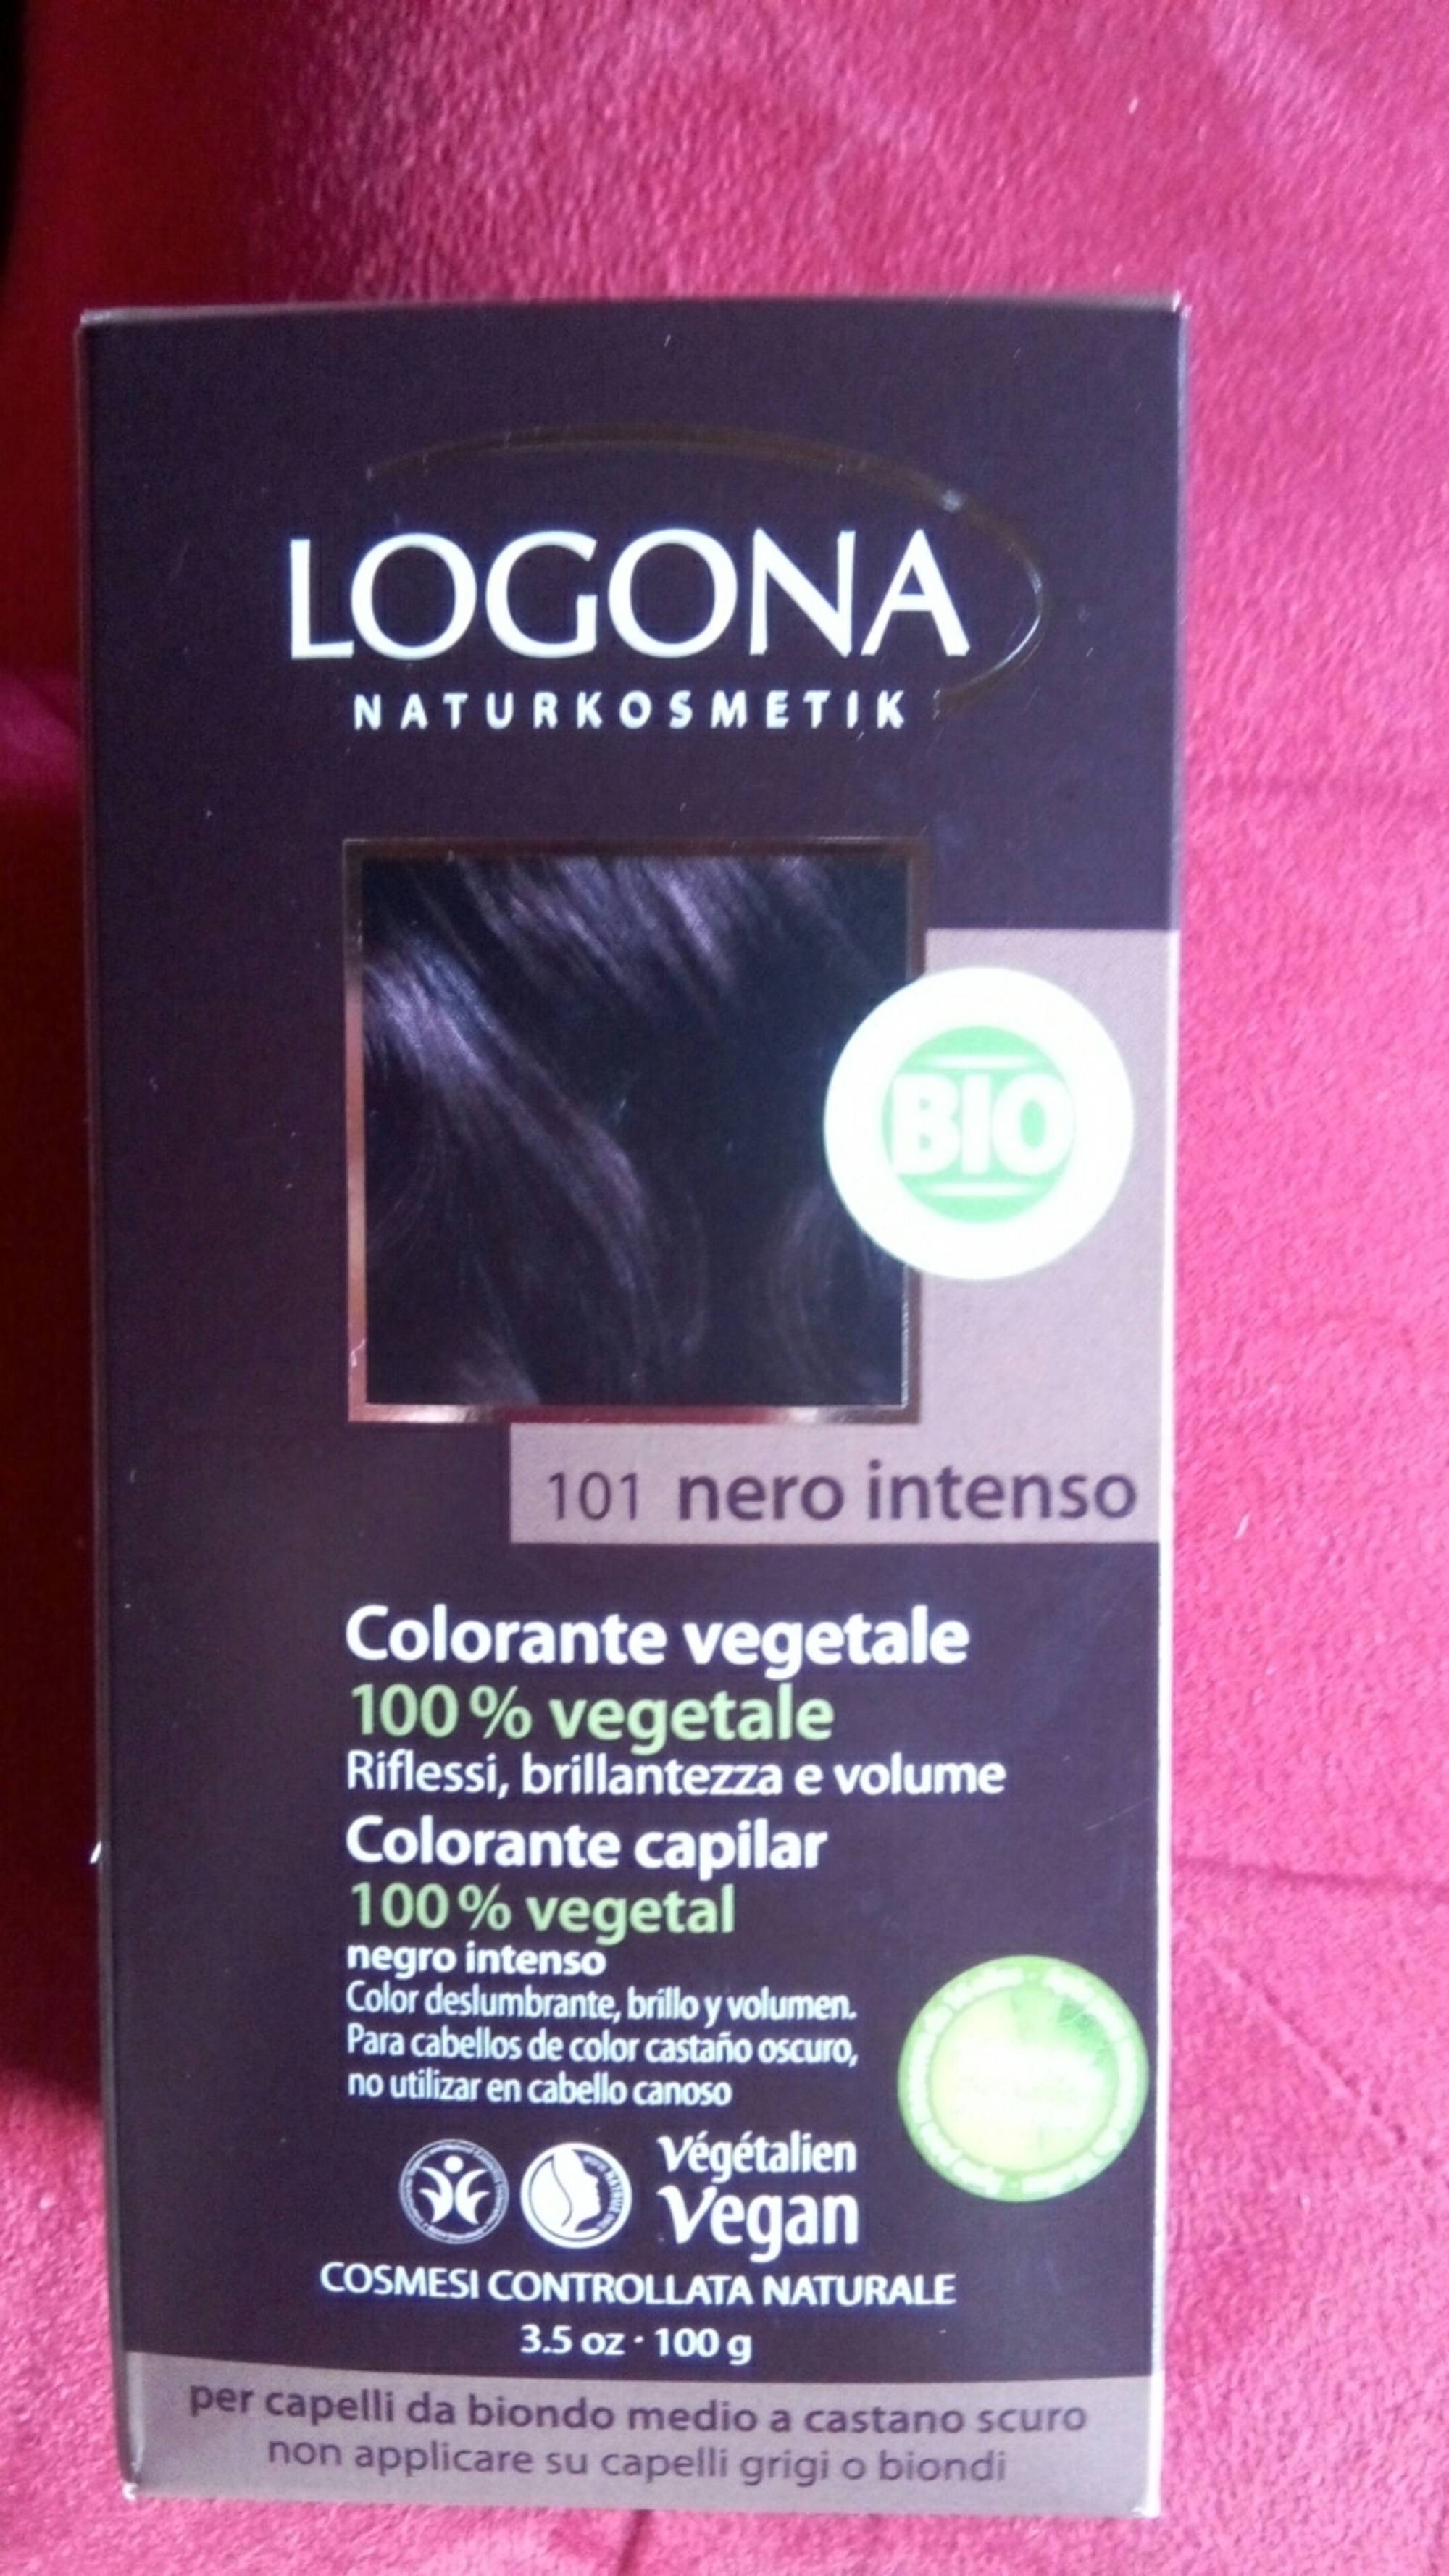 LOGONA - Colorante vegetale - 101 nero intenso